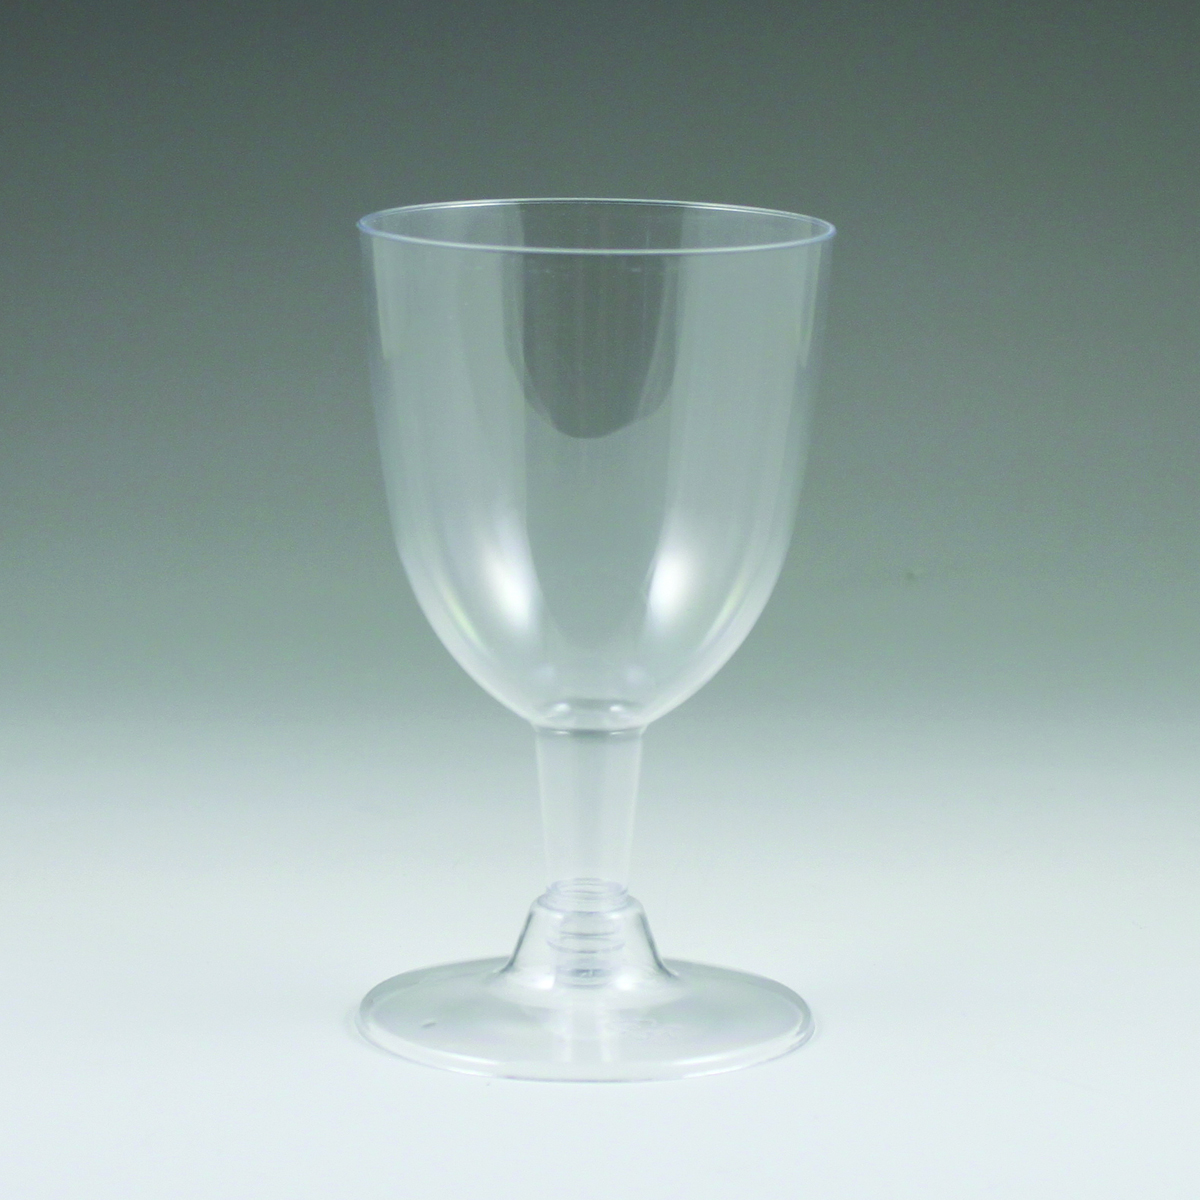 5 oz. Clear Glass Wine Glass